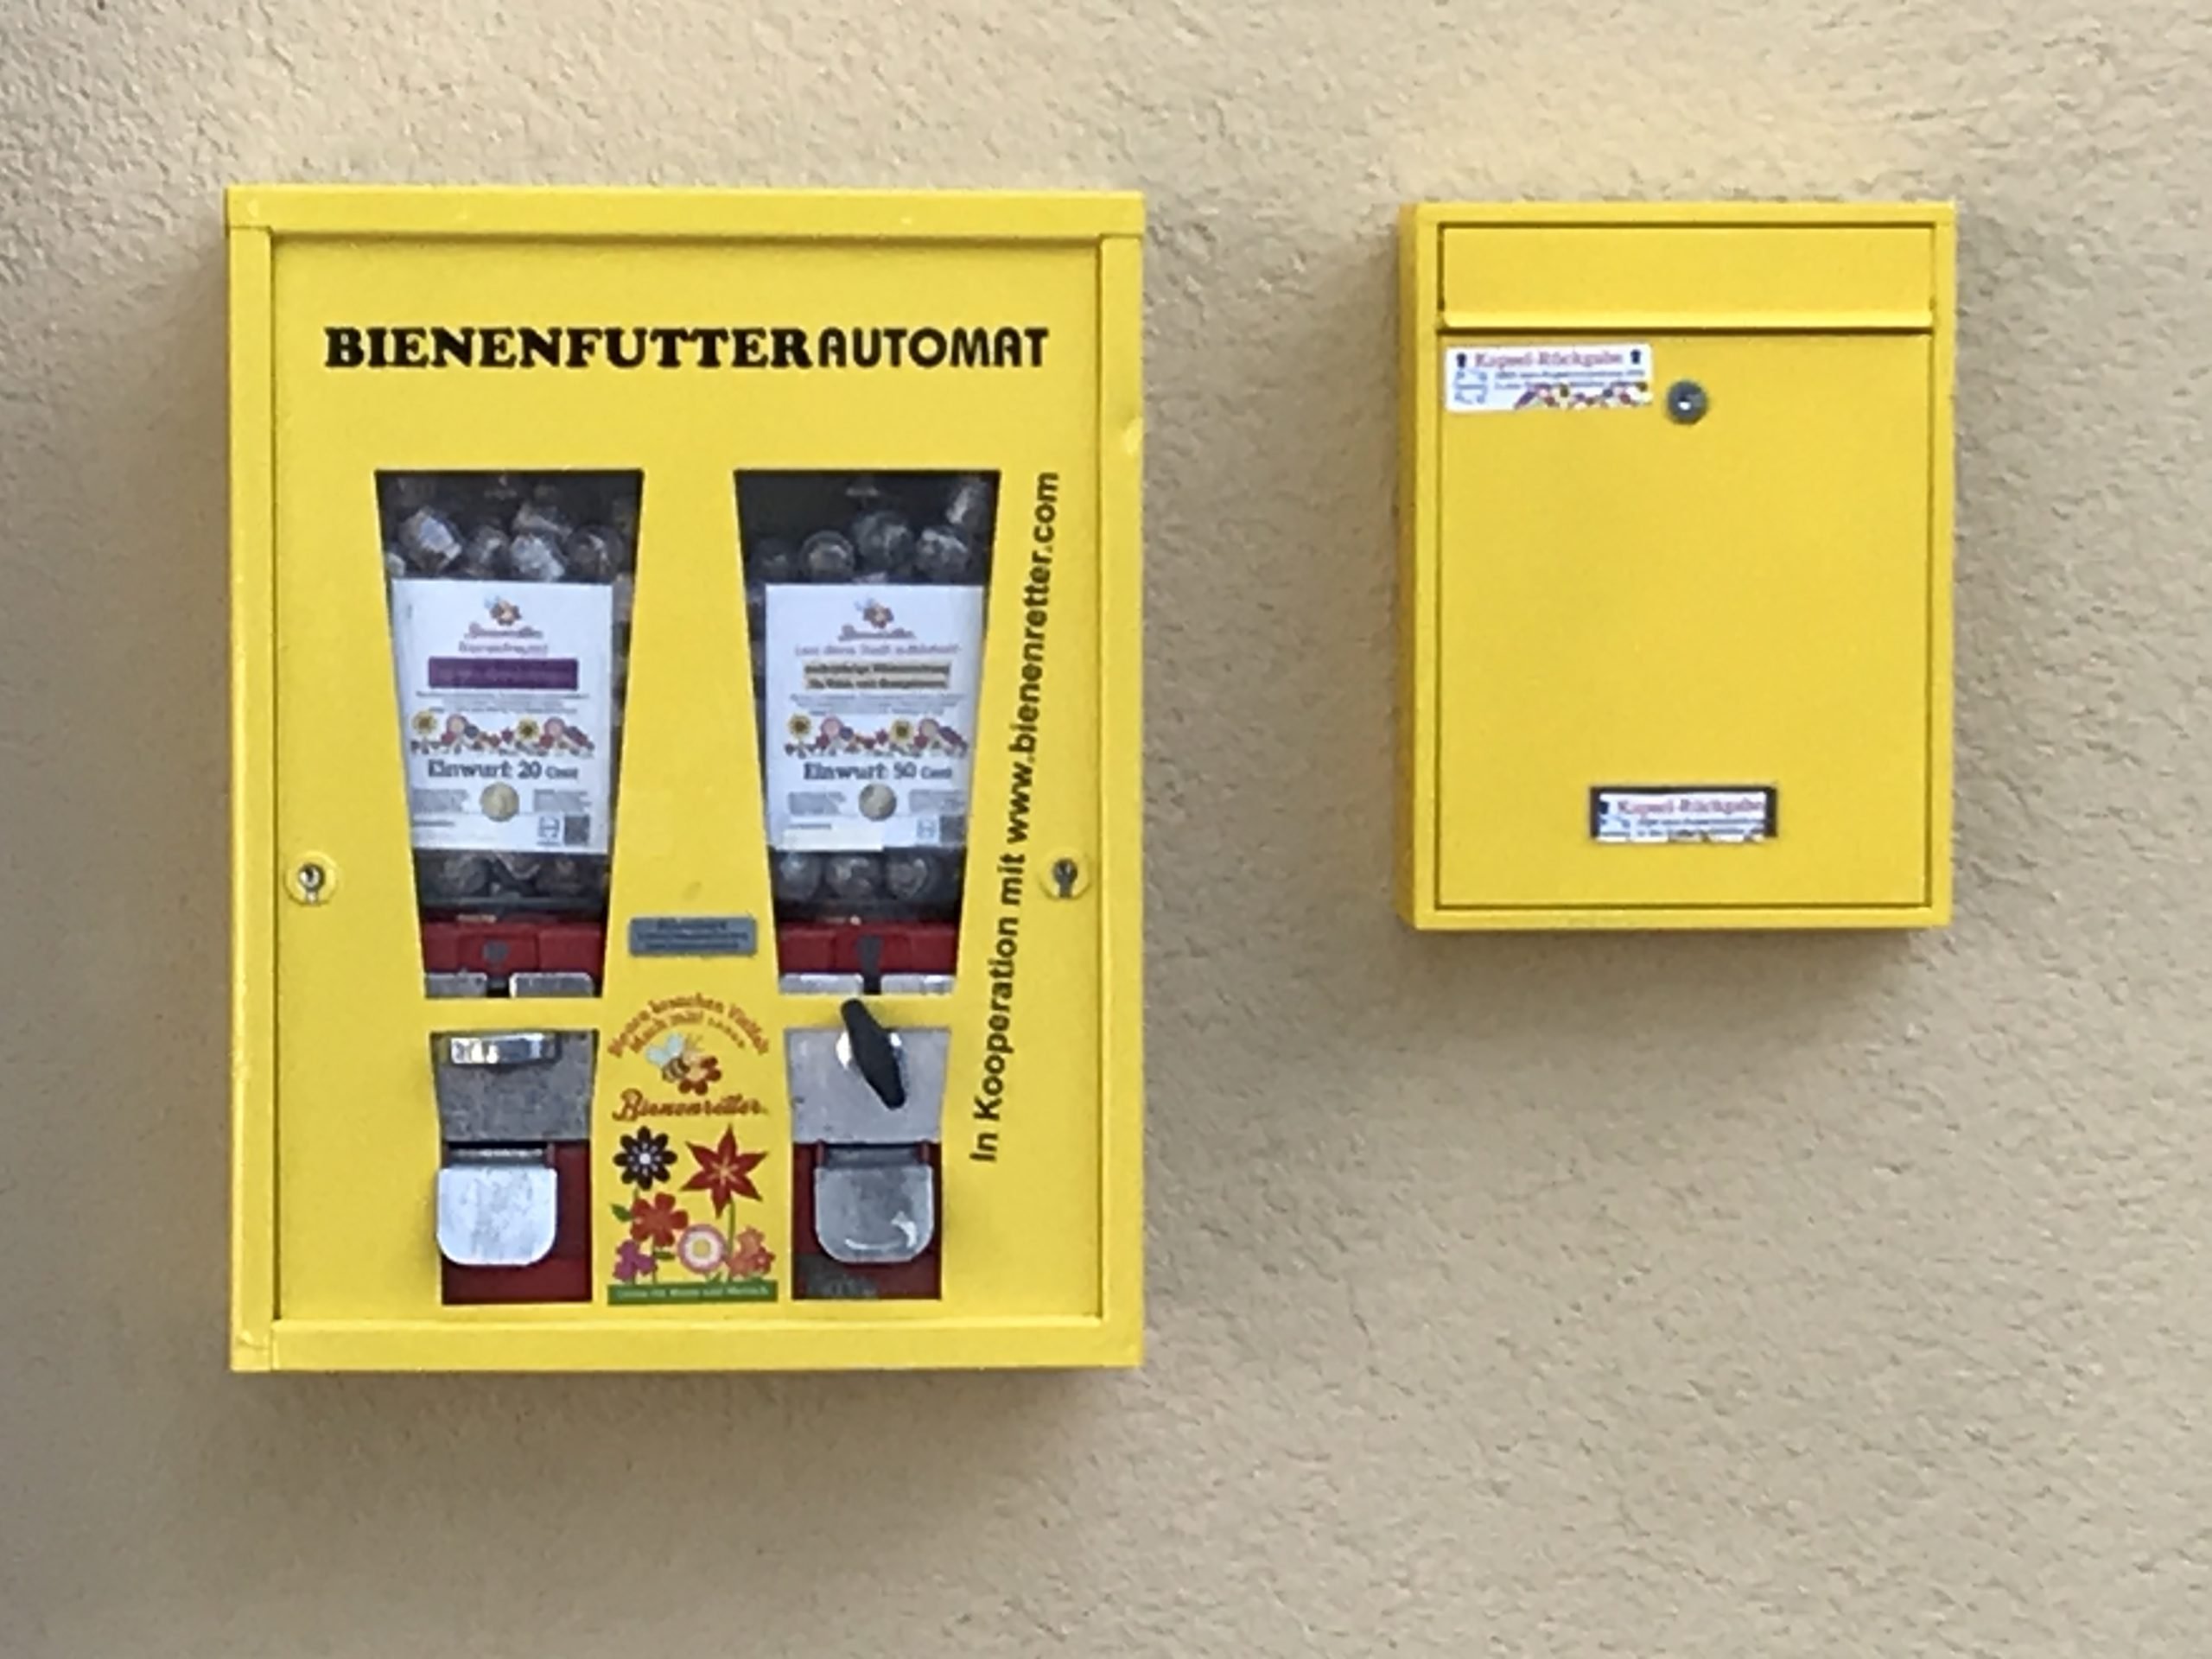 Der Bienenfutterautomat ©Sebastian Everding